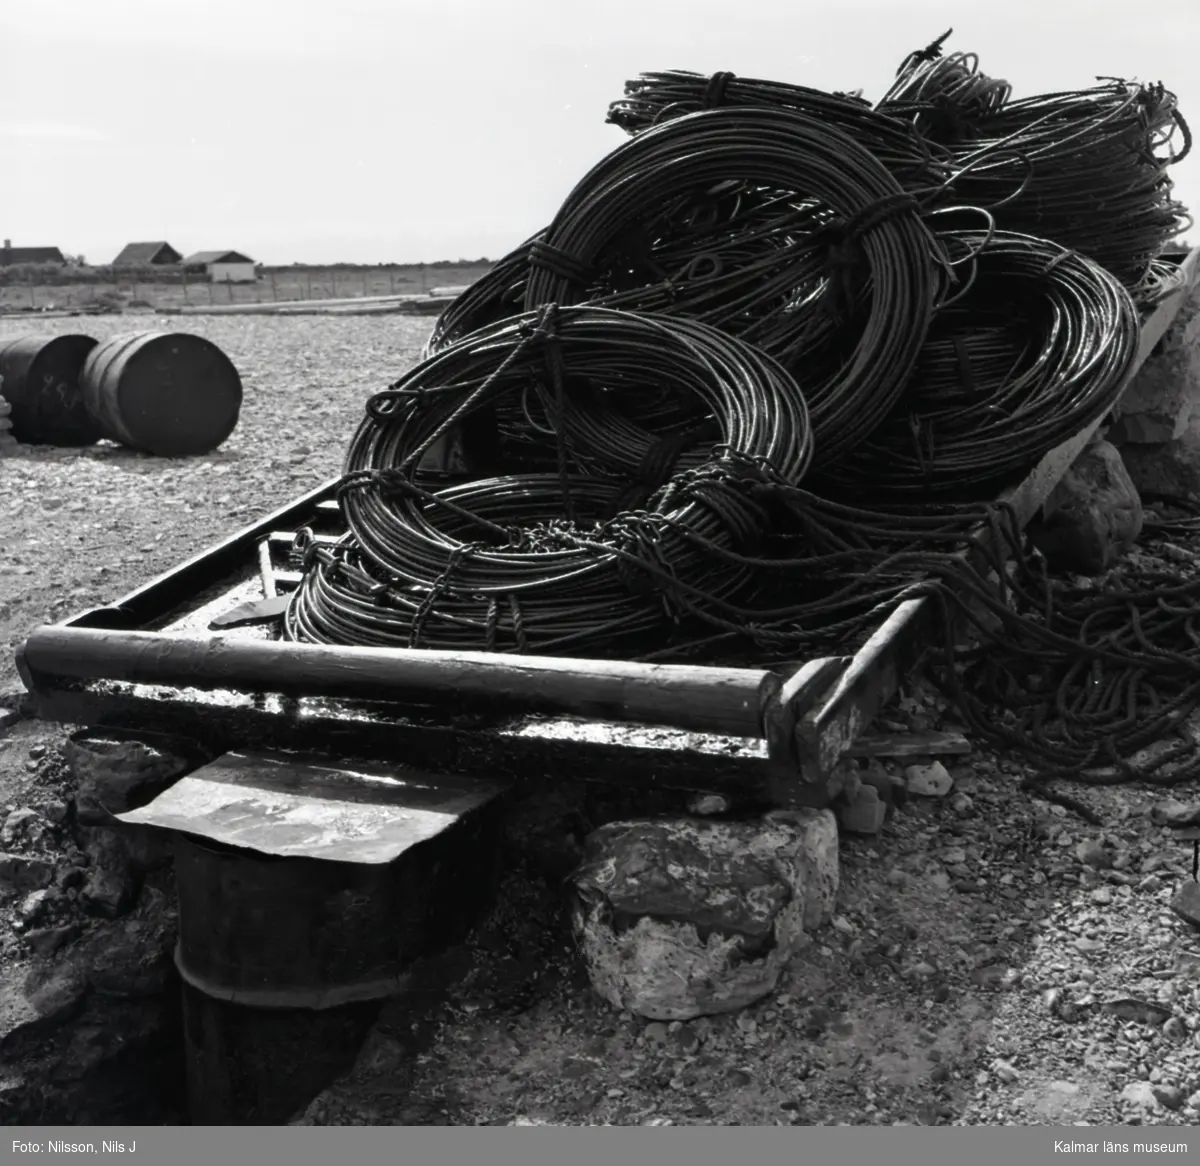 En tjärbark där fiskare färgade sina garn.

Wire på tjärbark vid tjärgryta.